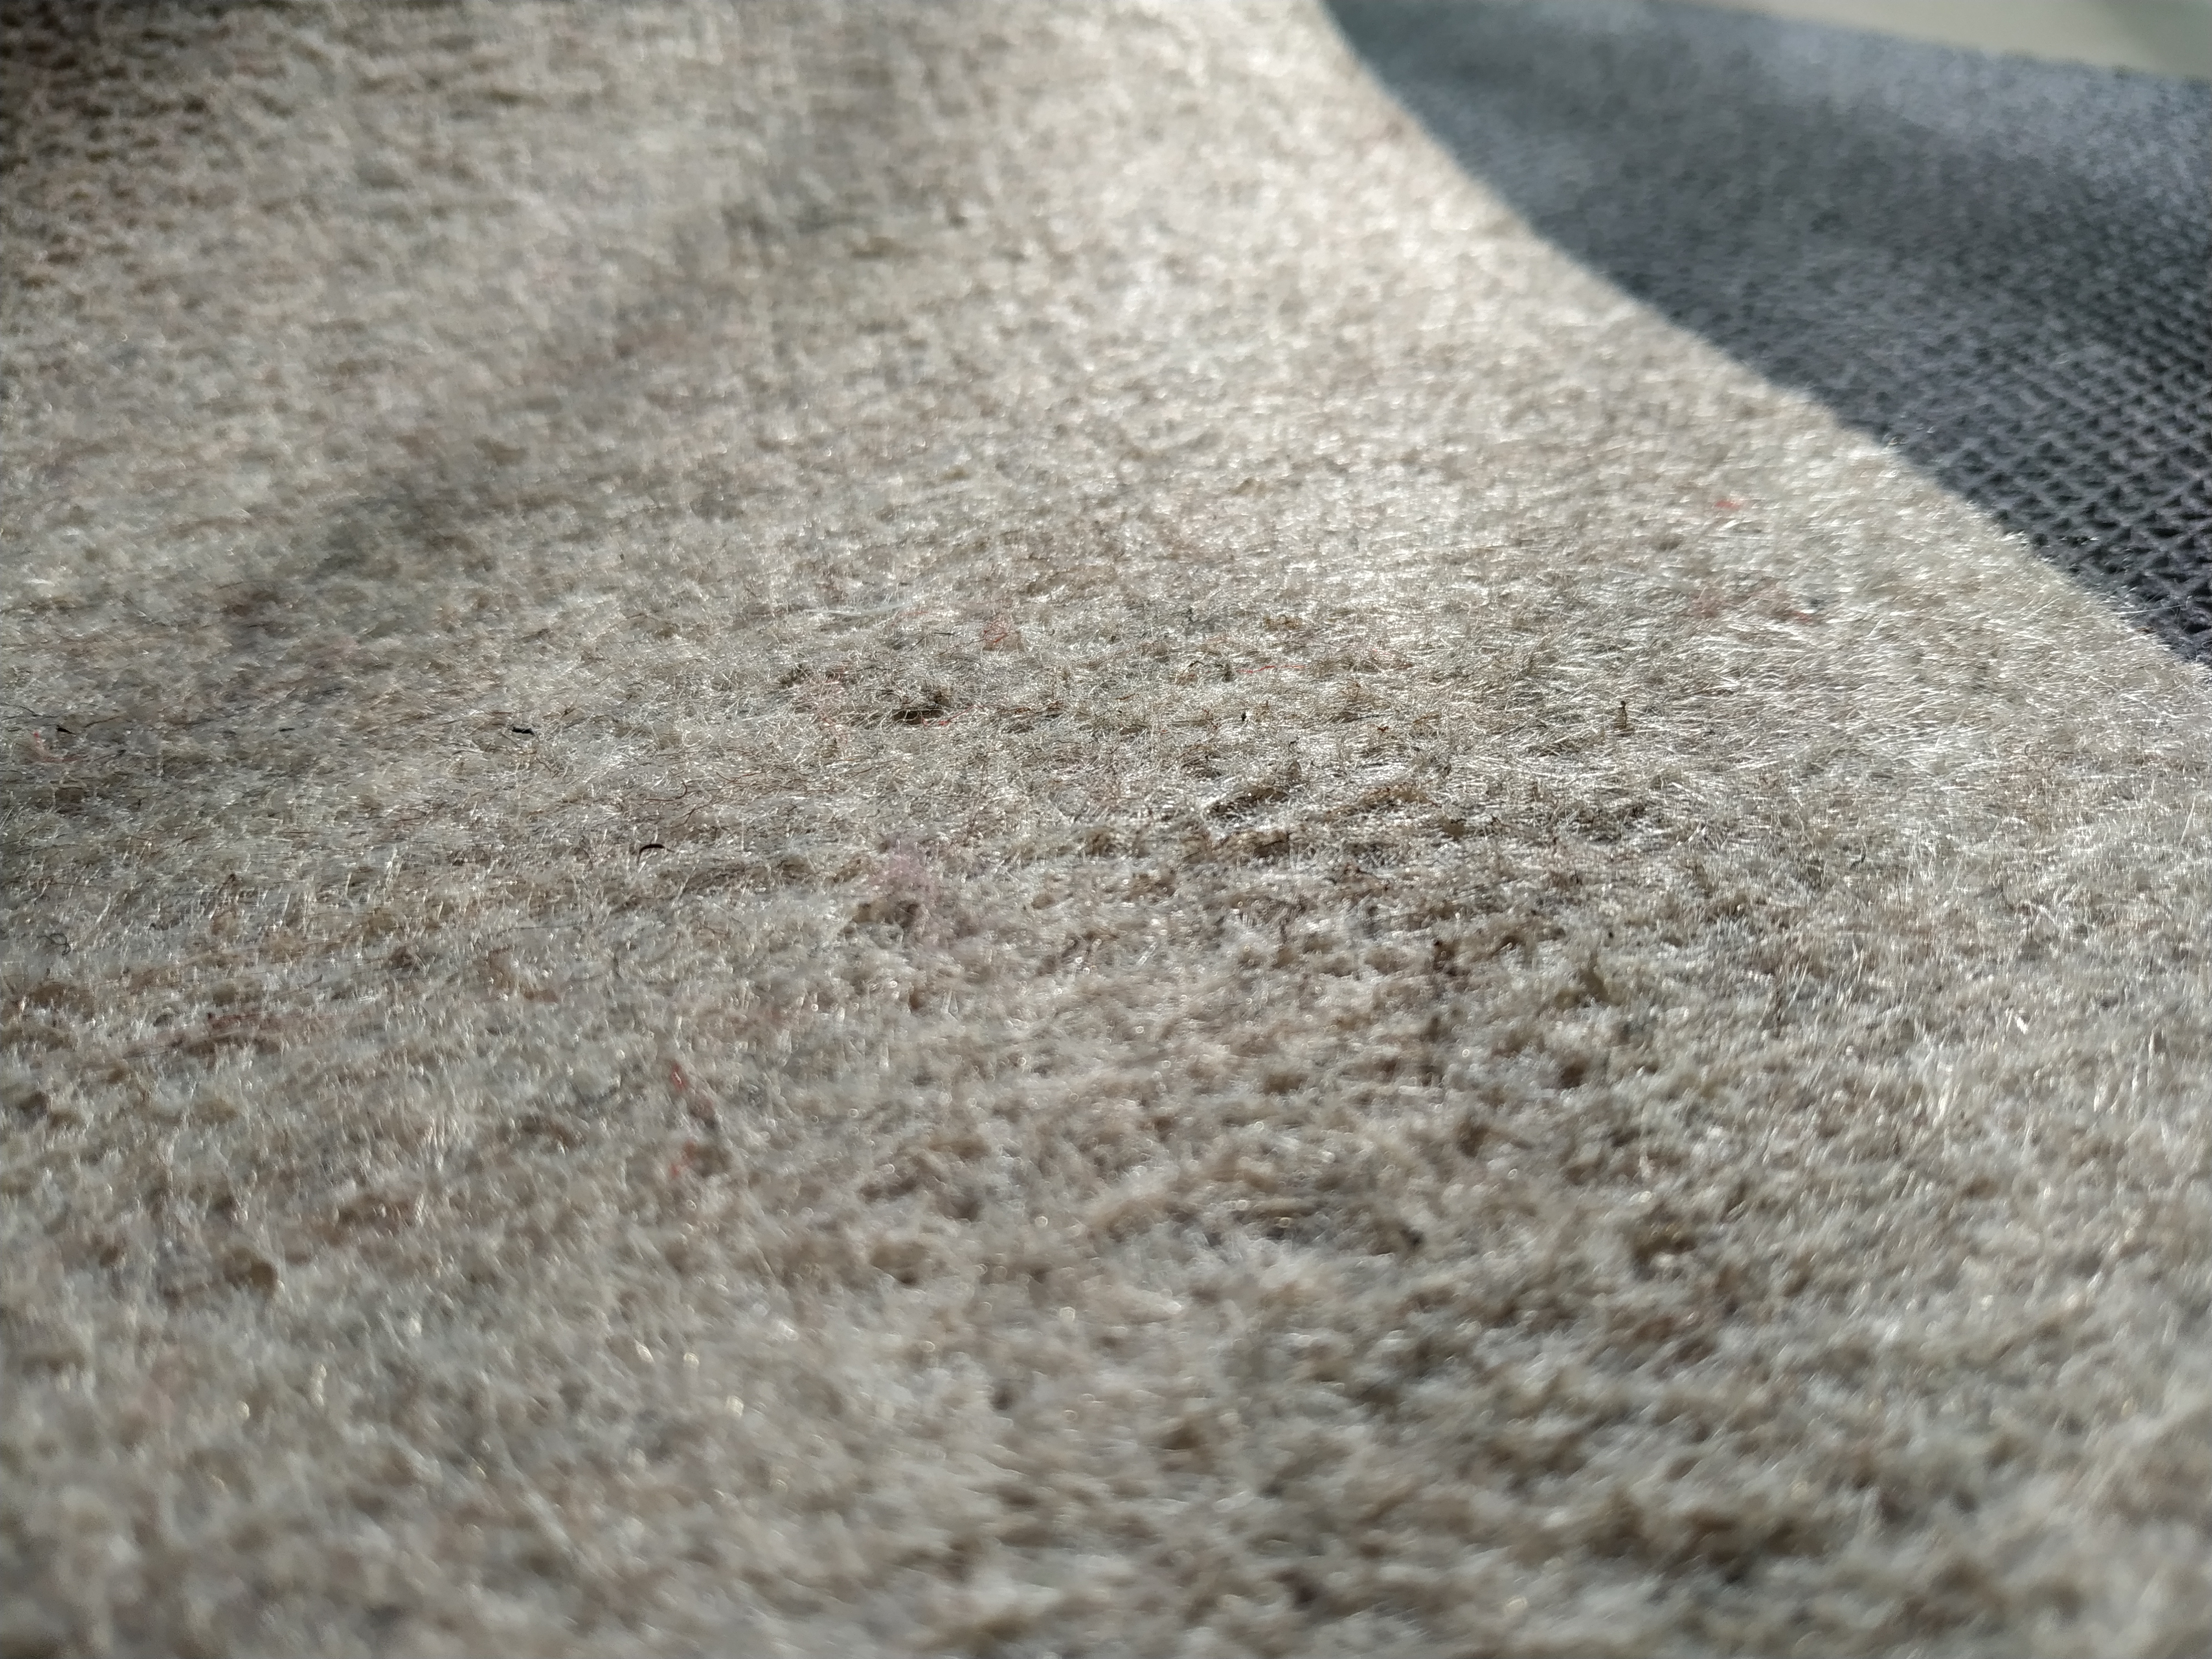 Coussin de protection en feutre 1/4 de tapis, confort supérieur sous le pied – Sans danger pour tous les sols.